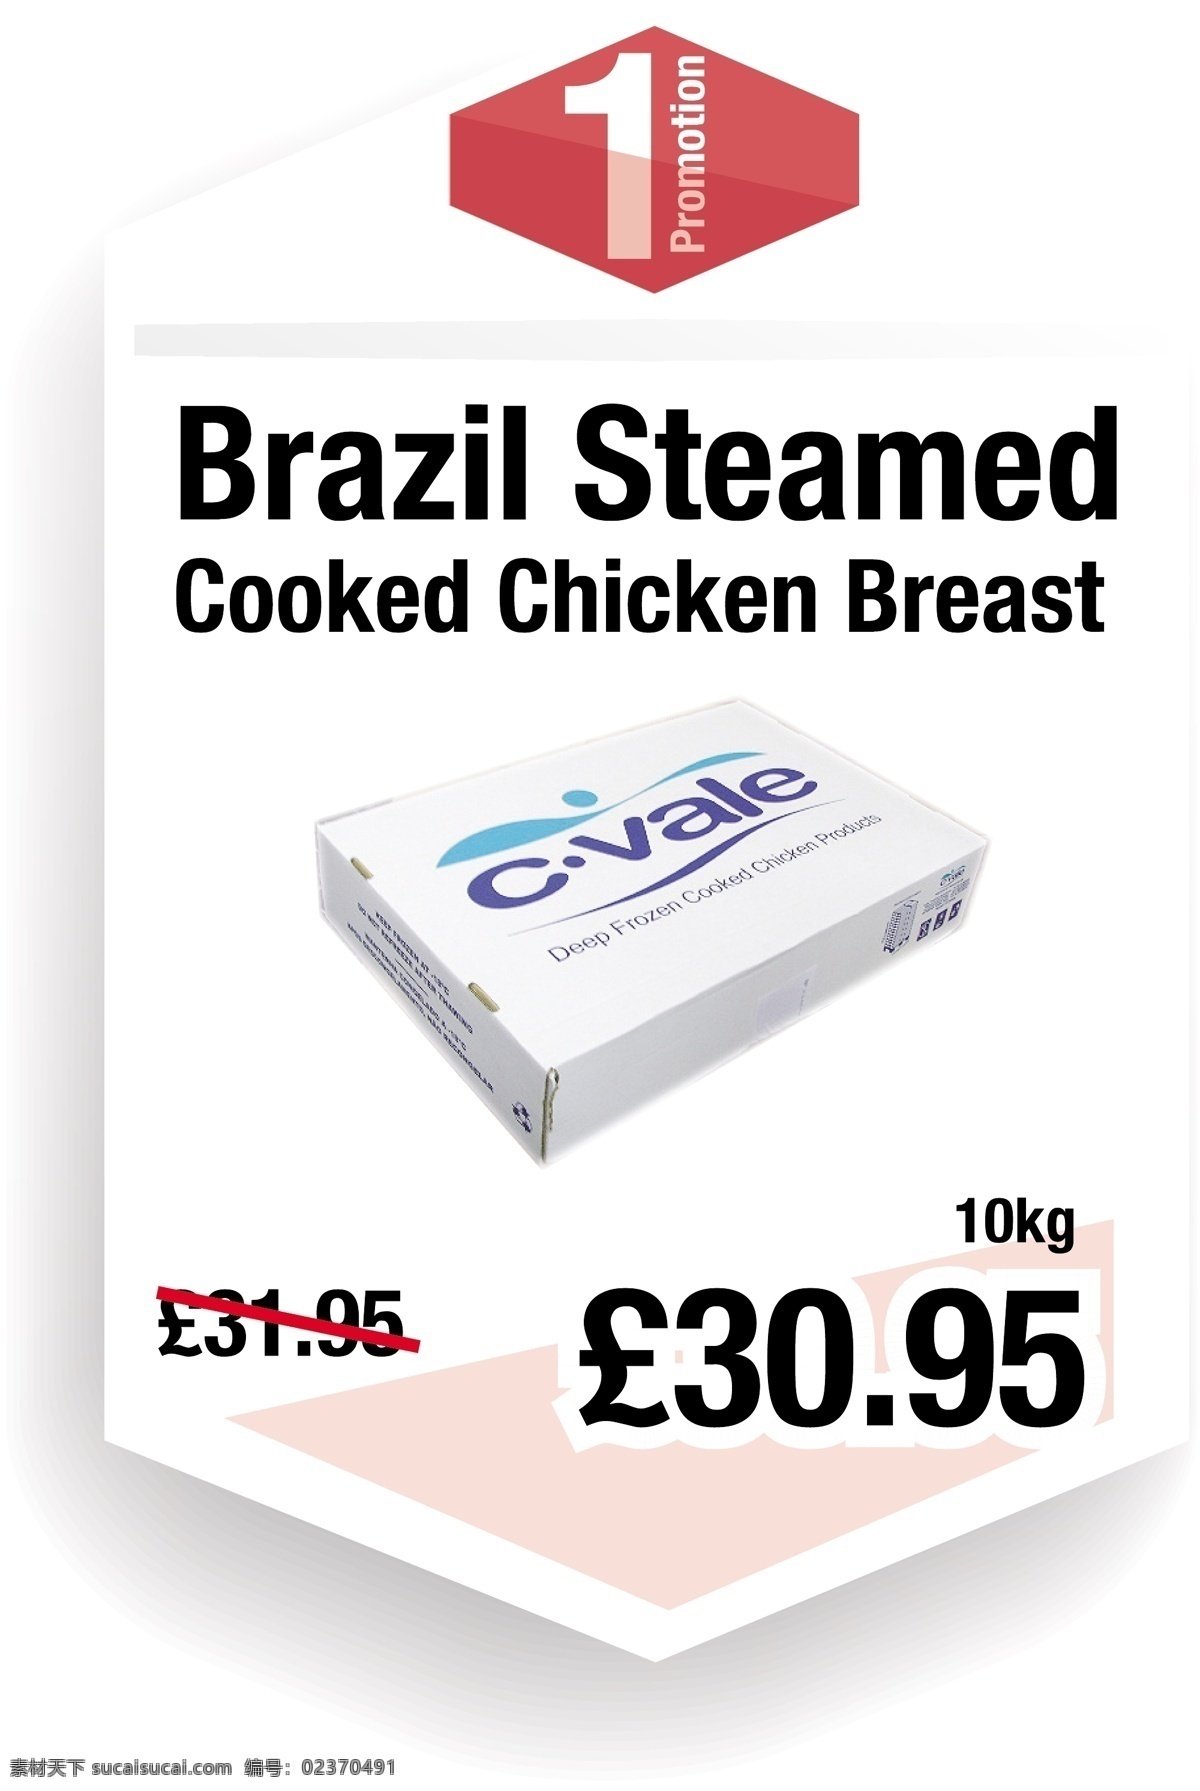 减价海报 鸡胸海报 优惠 打折 跌价 steam chicken breast discount offer 白色